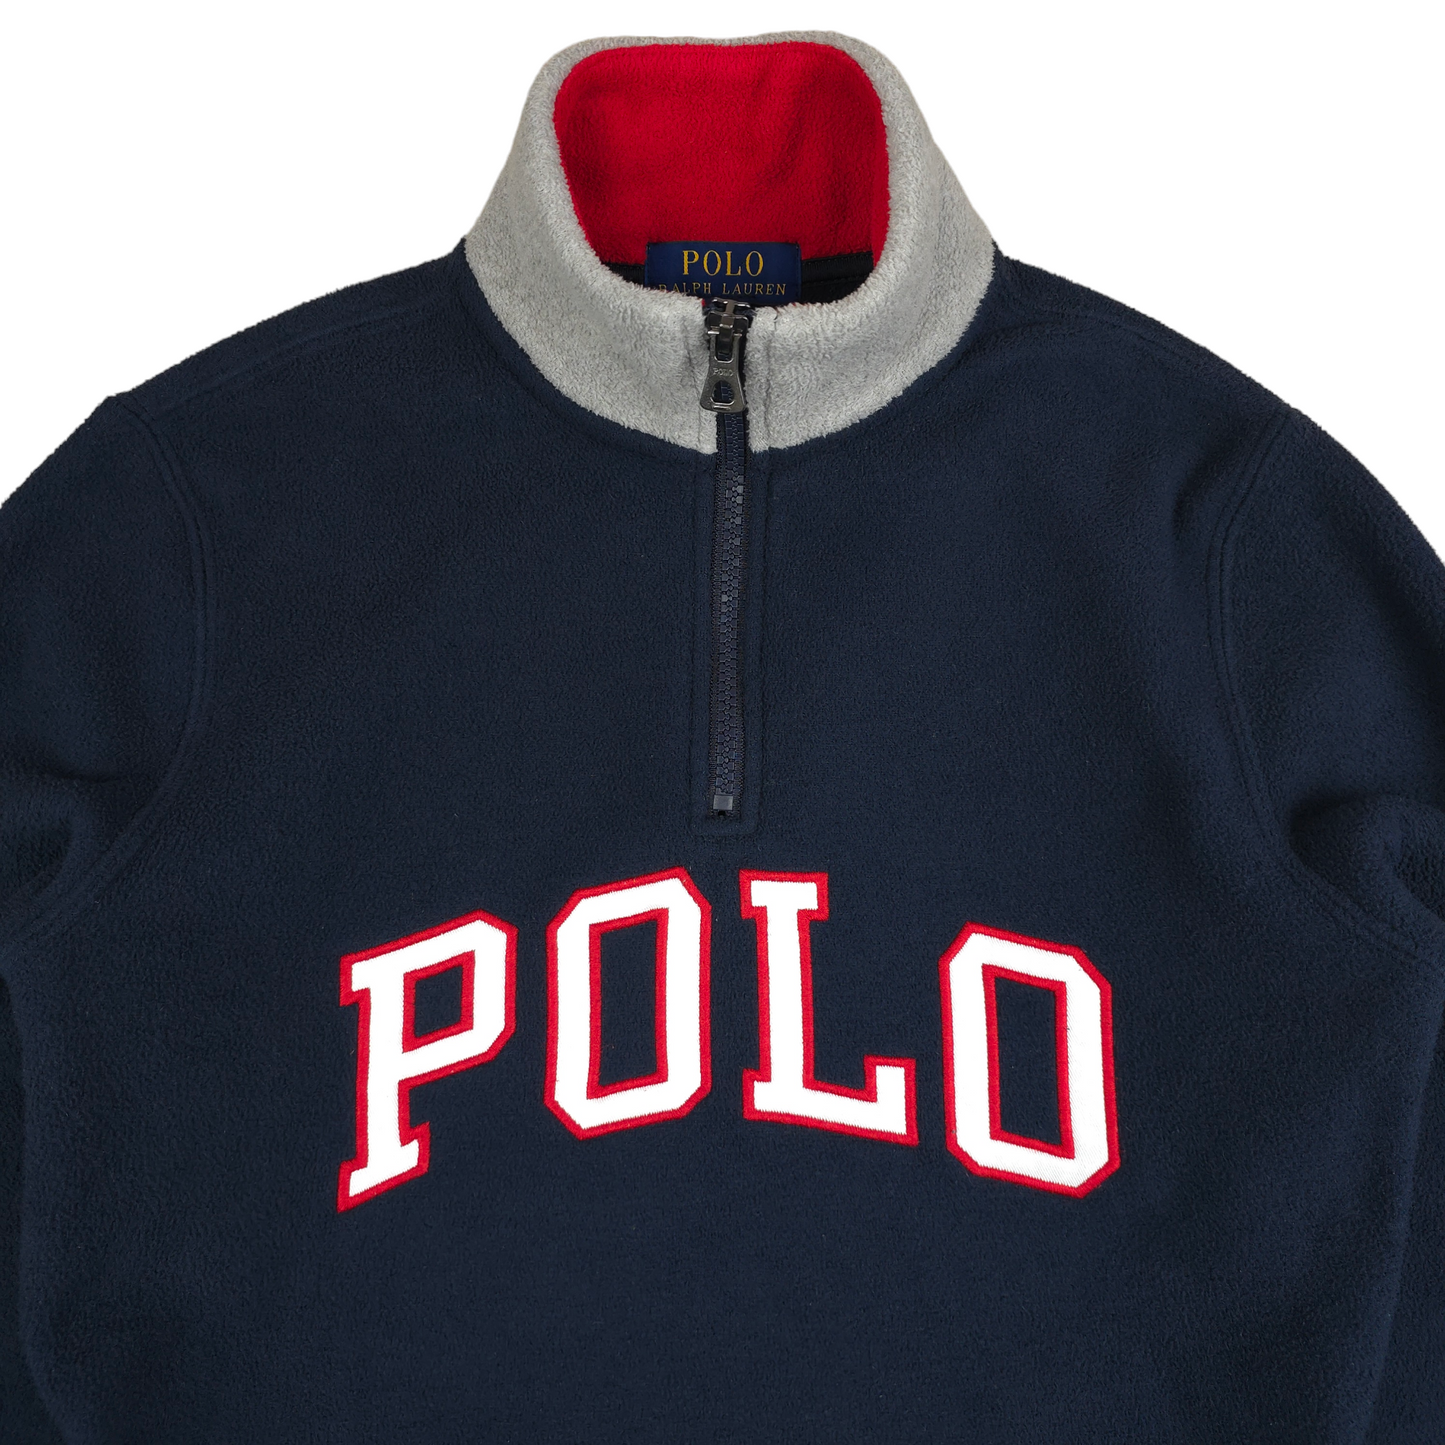 Polo Ralph Lauren 1/4 Zip Fleece - WMNS S